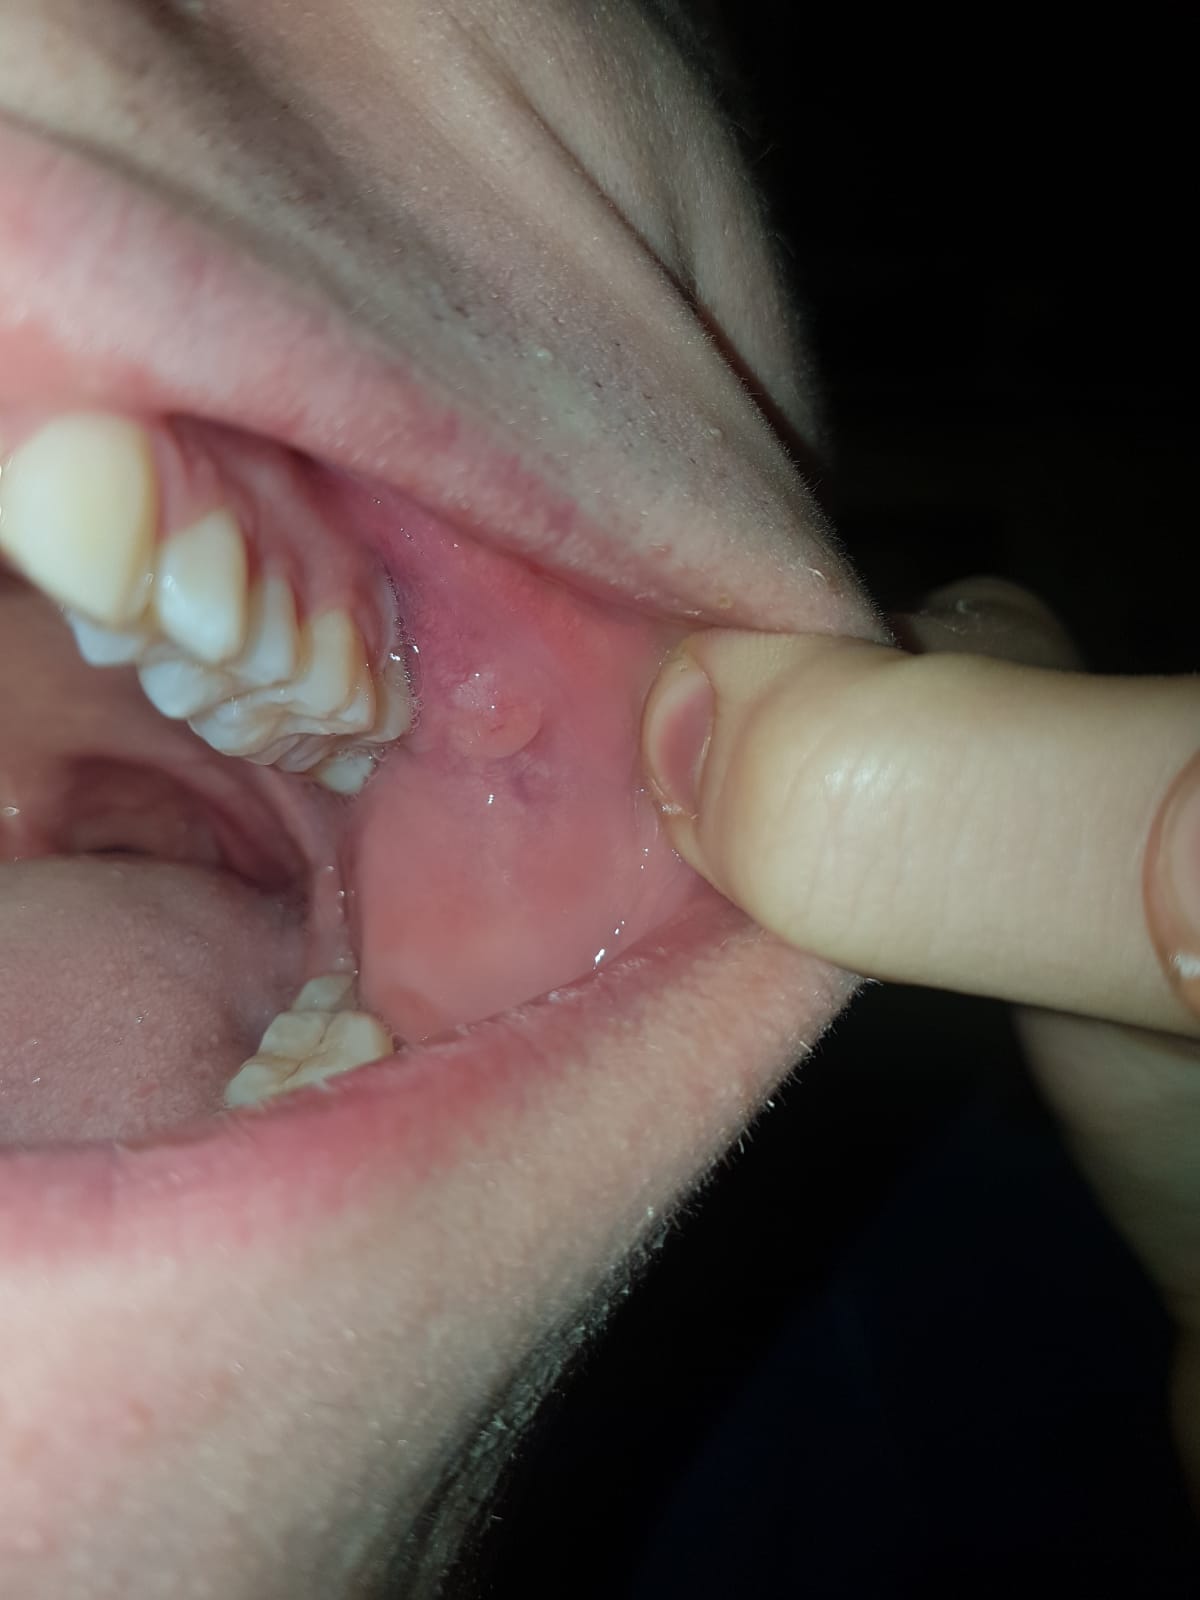 Da una settimana ho notato una strana escrescenza sulla parete interna della bocca